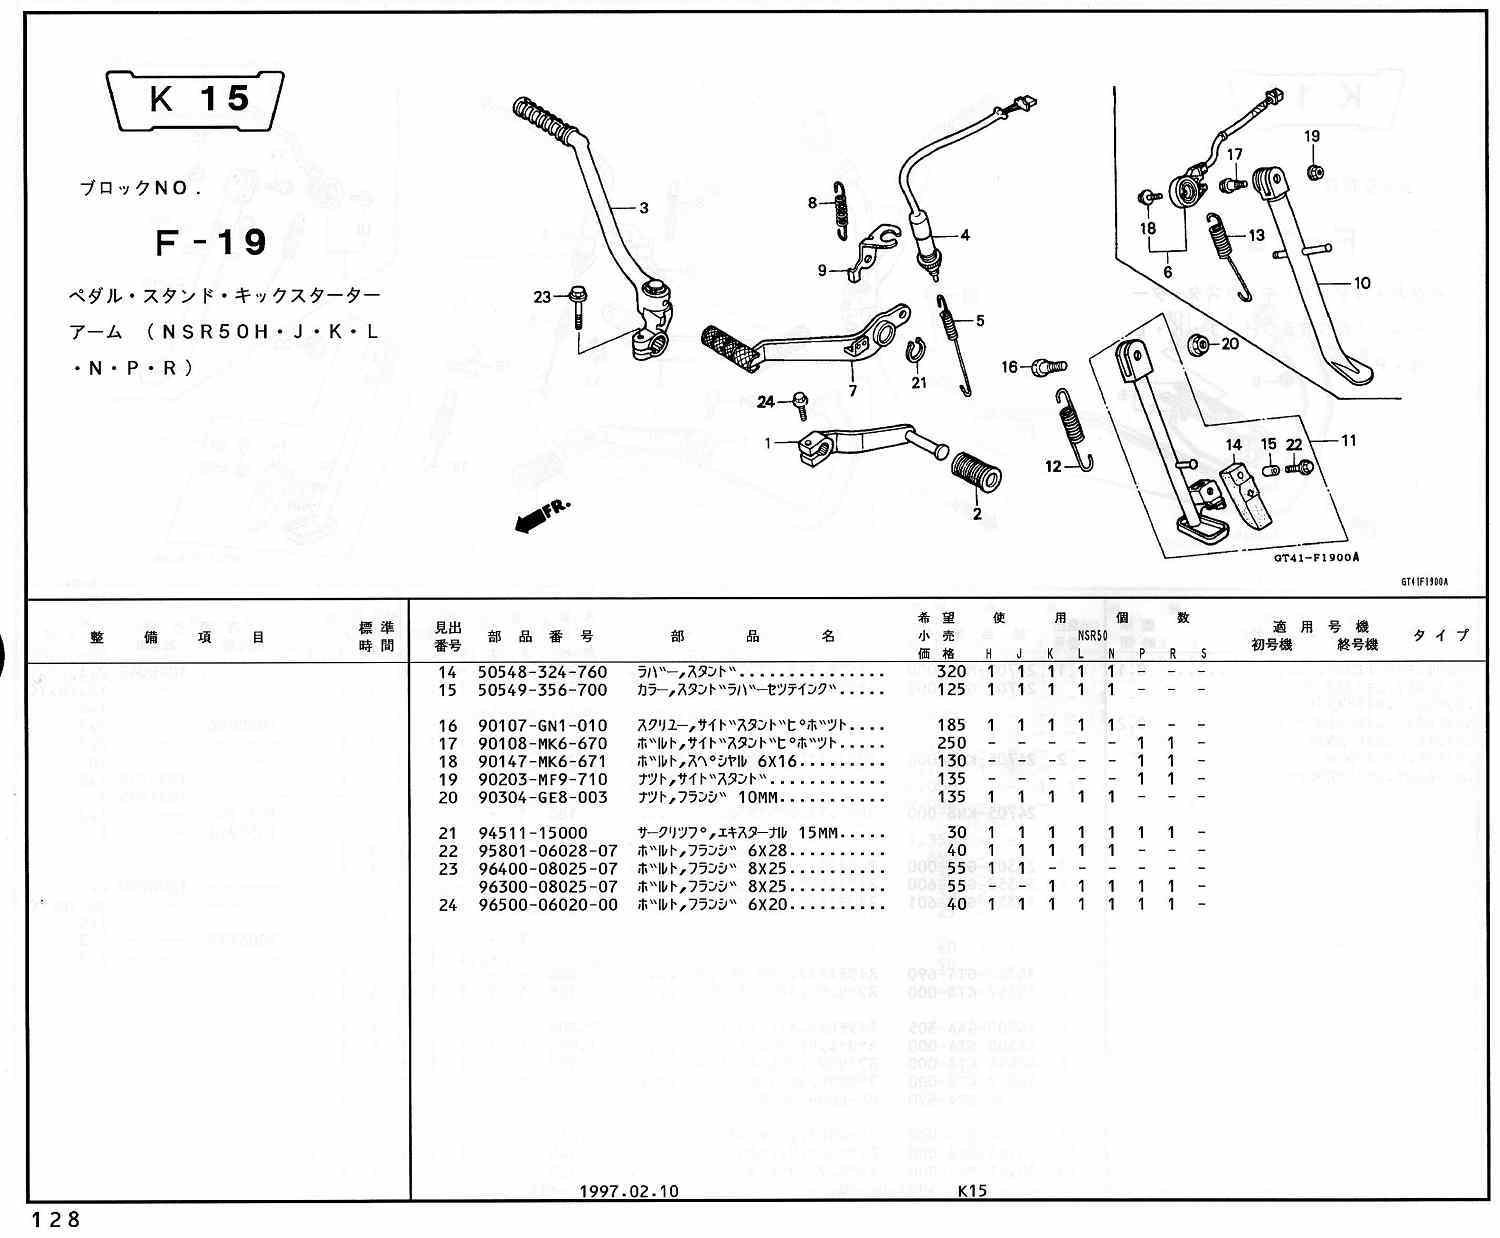 新作人気モデル ヒロチー商事 2号店312-105-B01 アグラス AGRAS